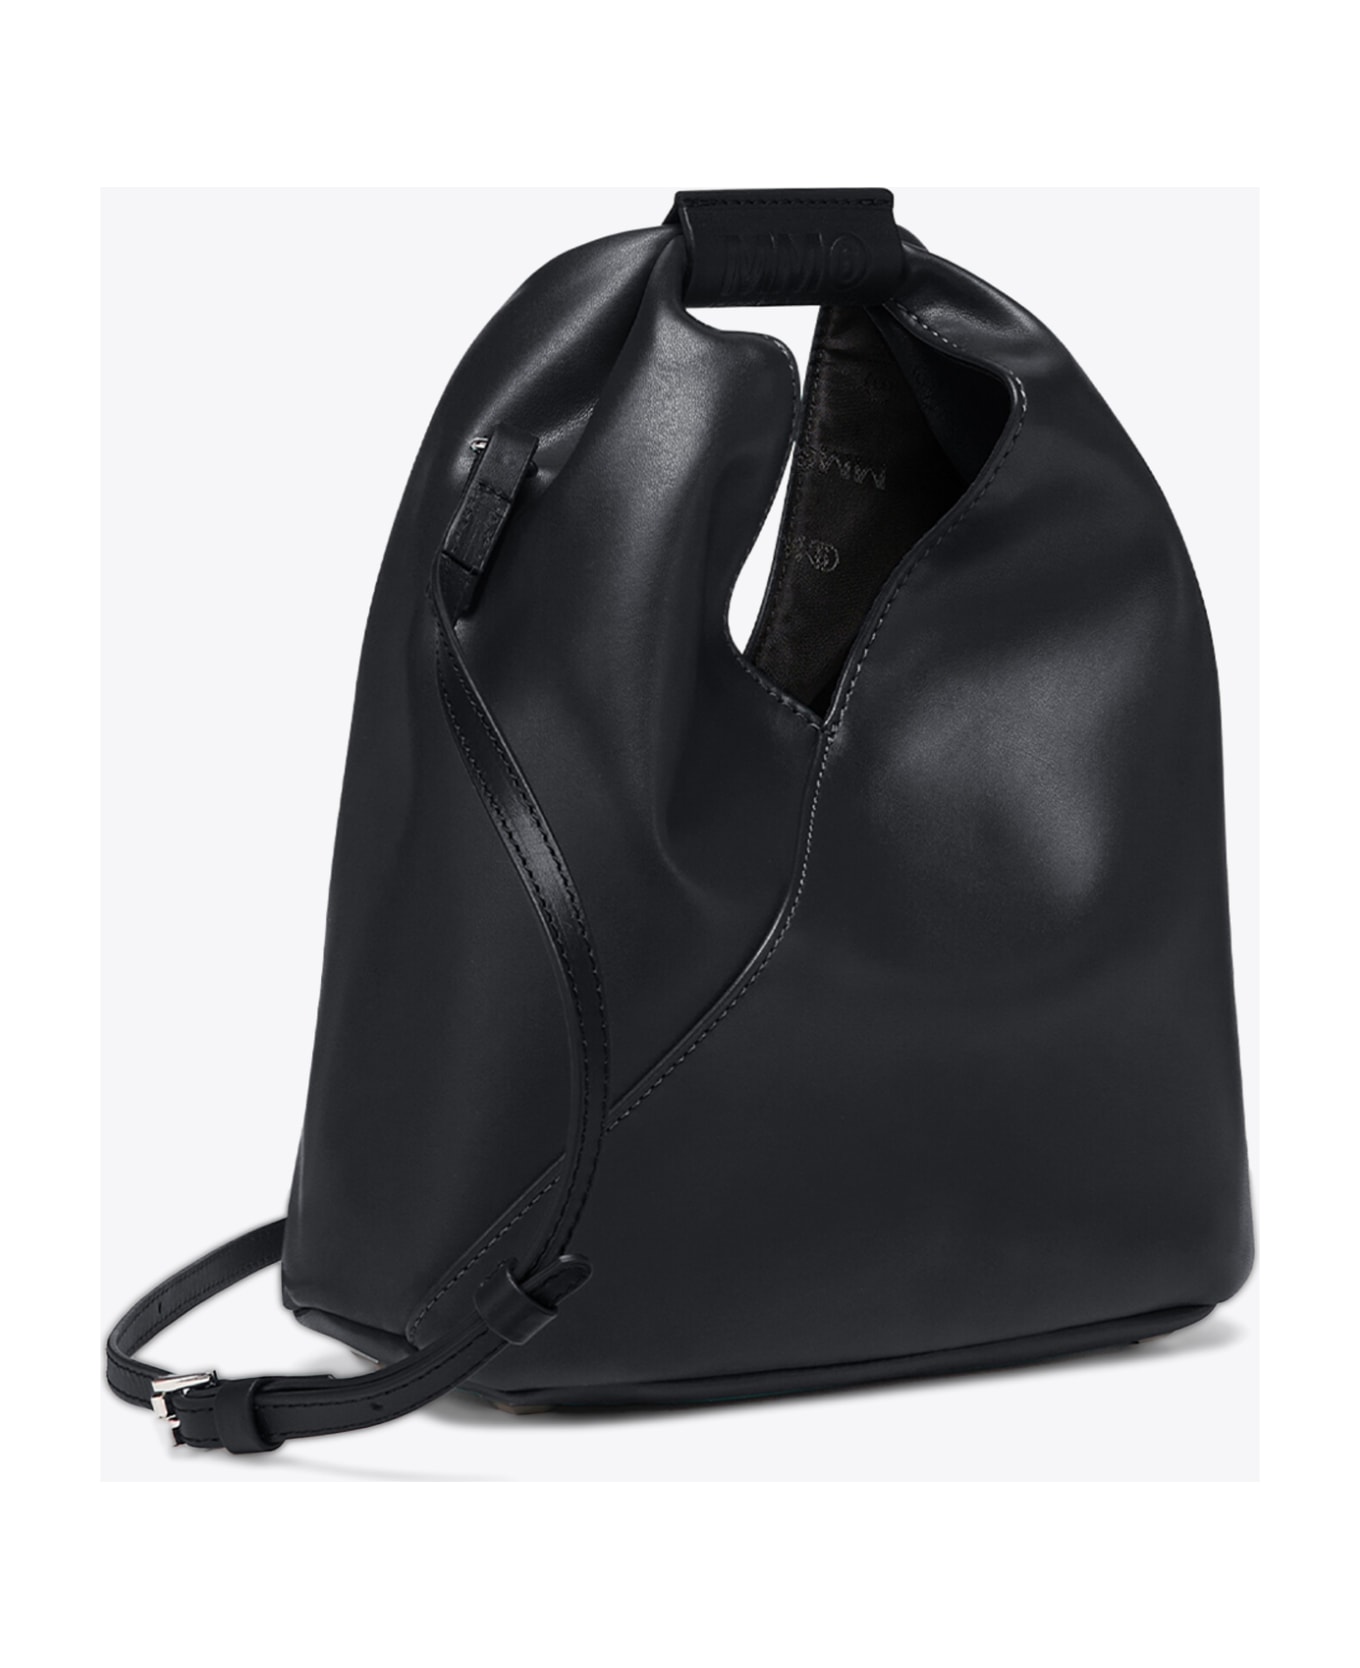 MM6 Maison Margiela Borsa Mano Black syntethic leather Japanese bag with shoulder strap - Nero